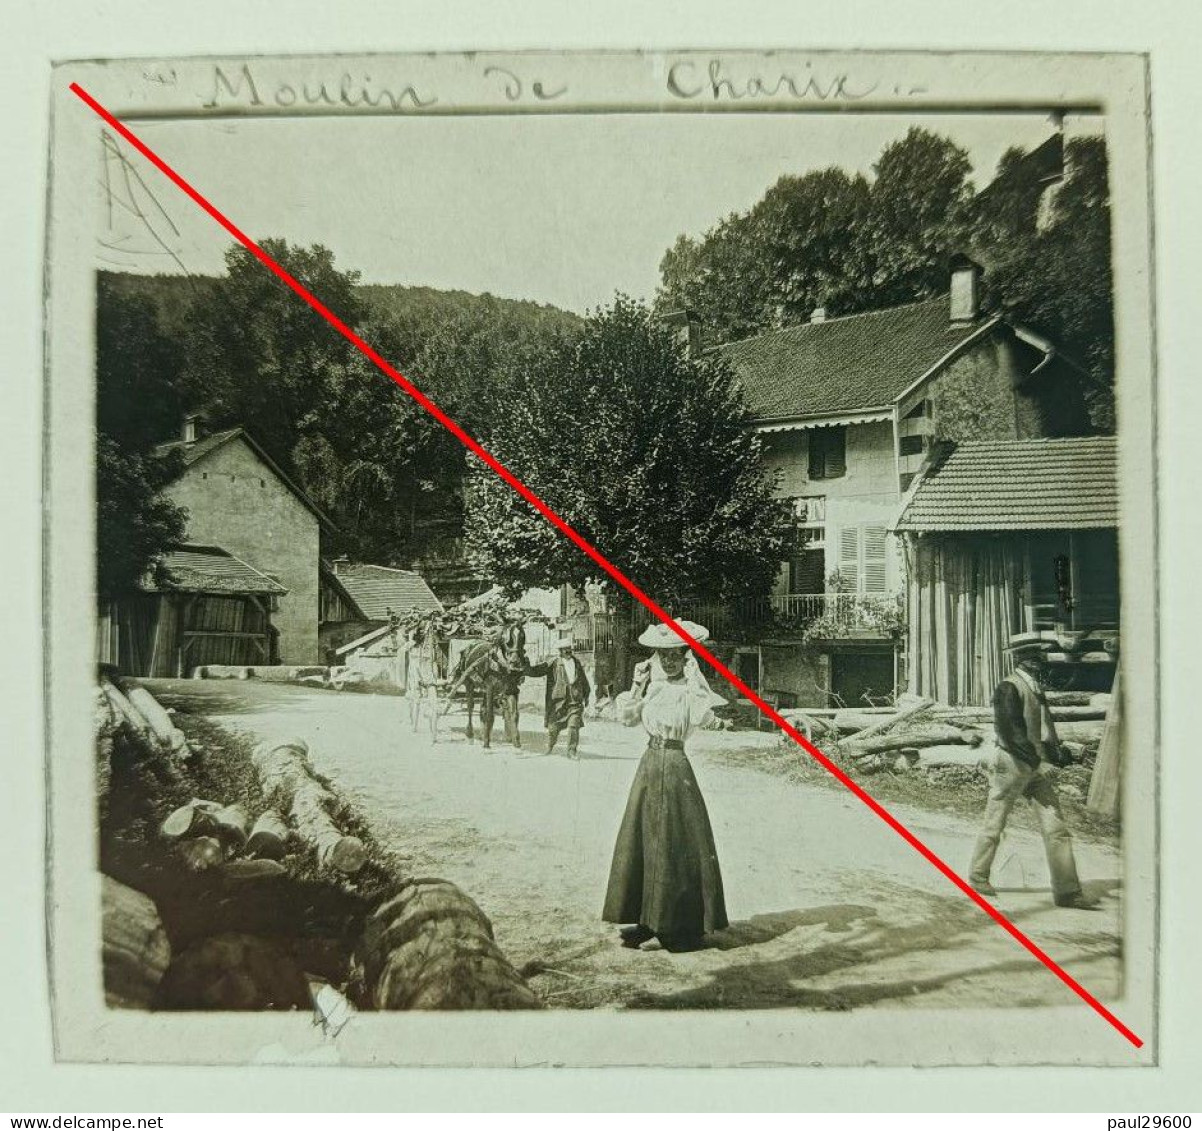 Photo Sur Plaque De Verre, L'ain, Moulin De Charix, Village, Maison, Rue, Attelage, Hangars, Bâtiments, Années 1930. - Glass Slides